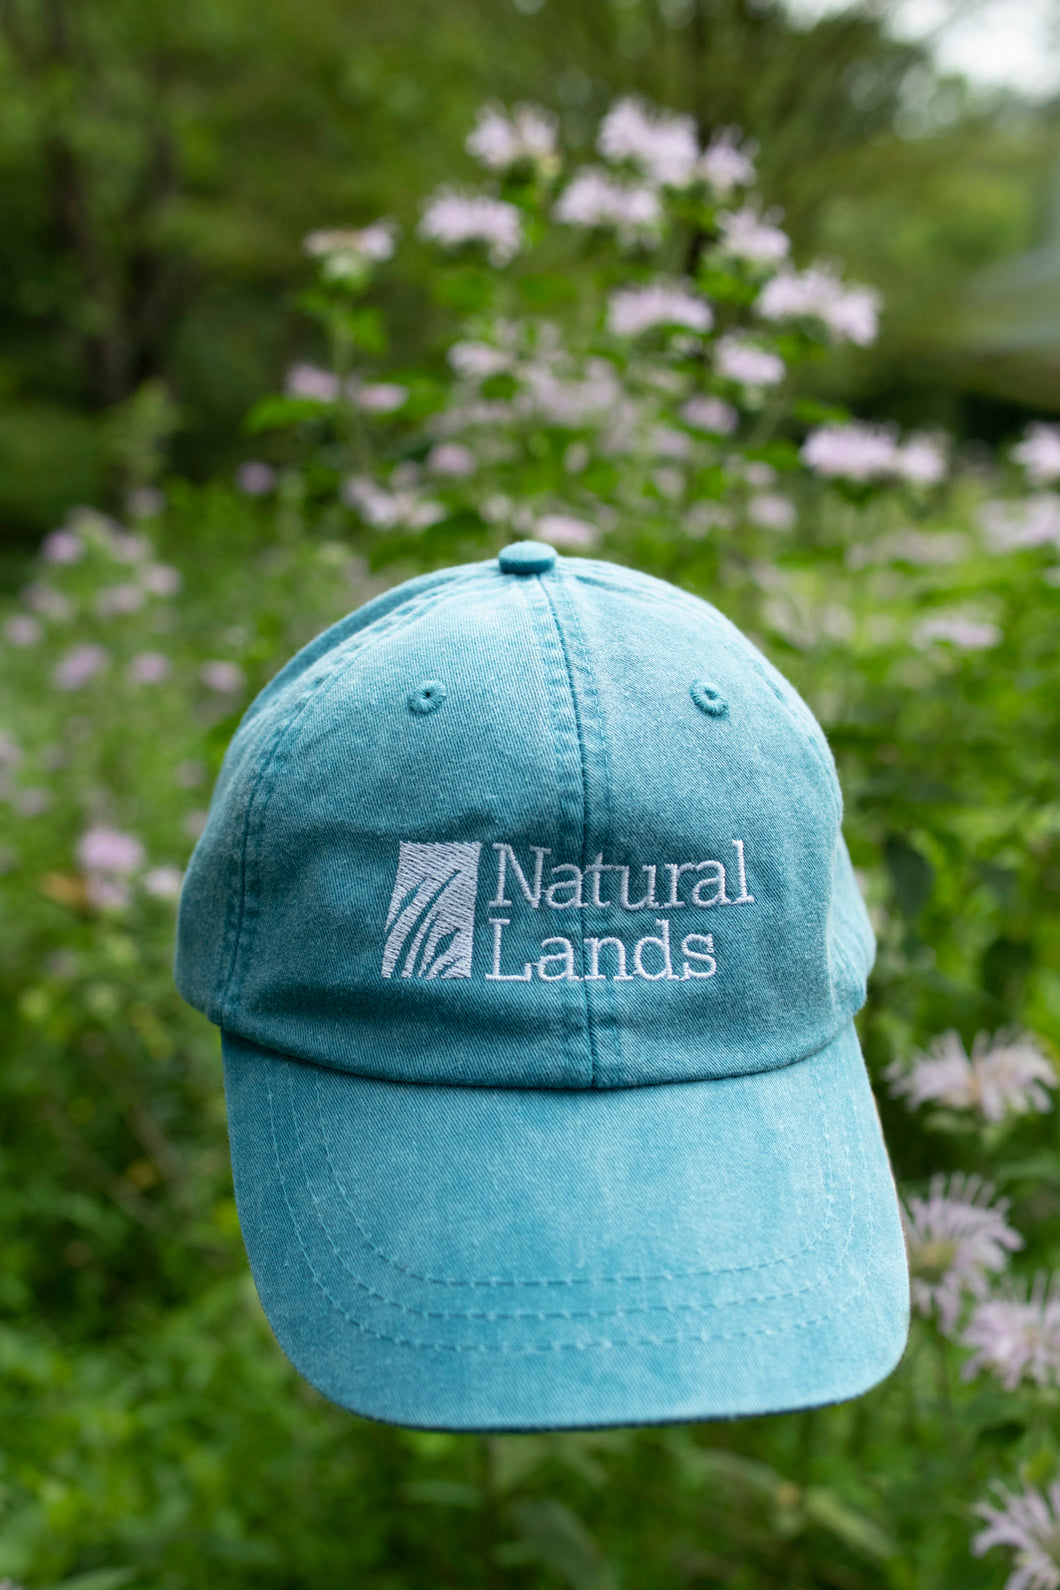 Natural Lands teal hat